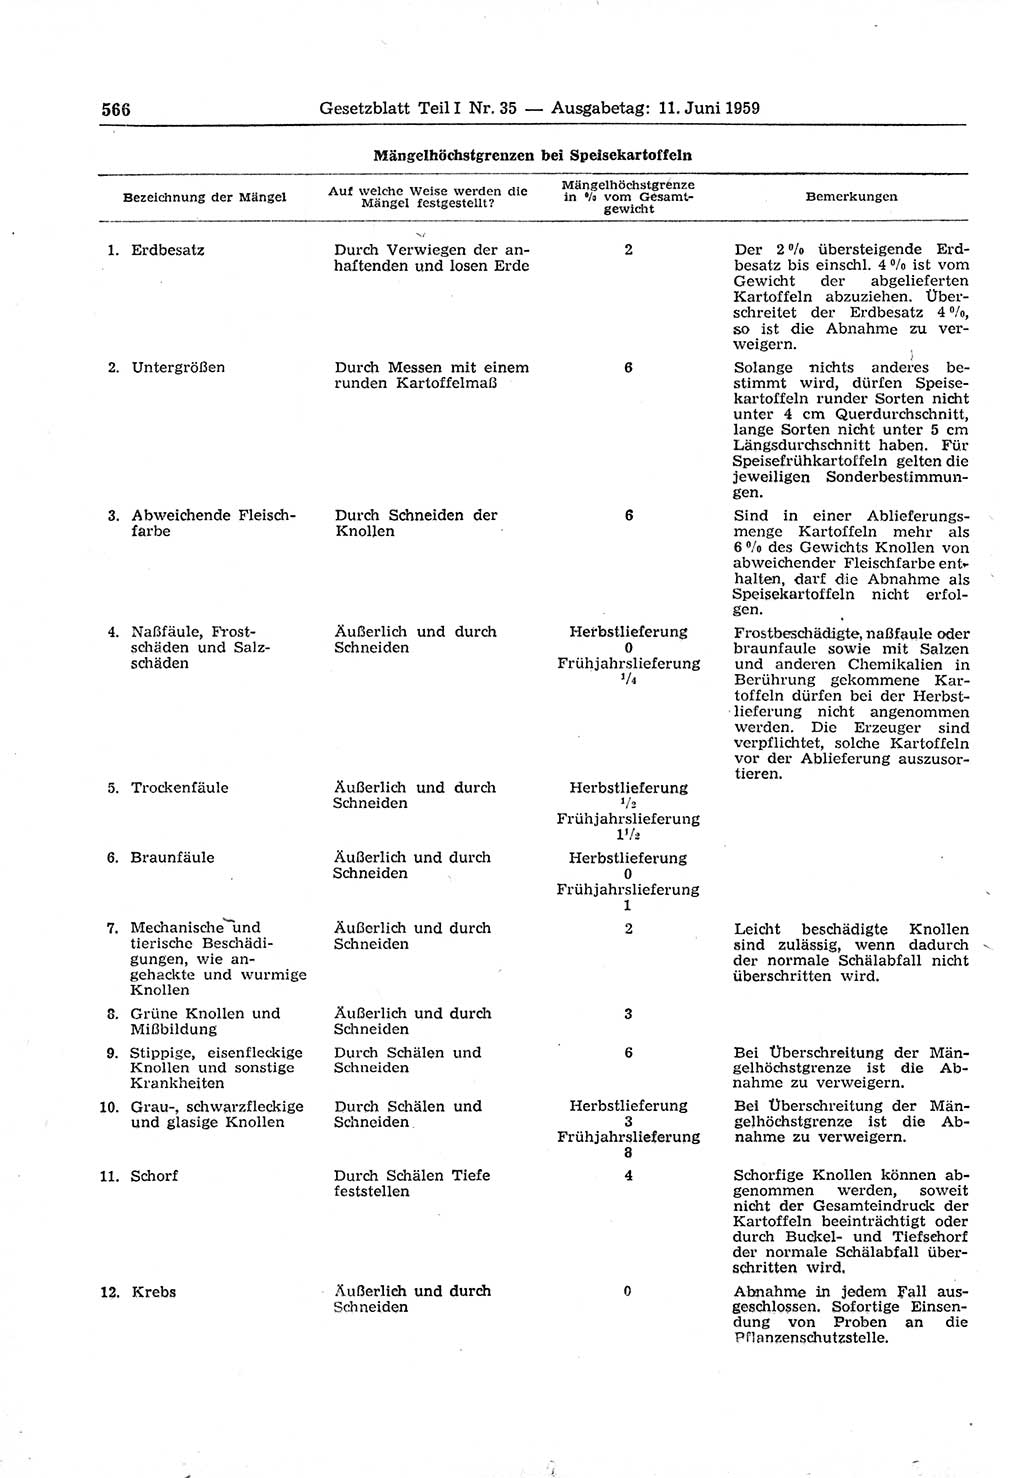 Gesetzblatt (GBl.) der Deutschen Demokratischen Republik (DDR) Teil Ⅰ 1959, Seite 566 (GBl. DDR Ⅰ 1959, S. 566)